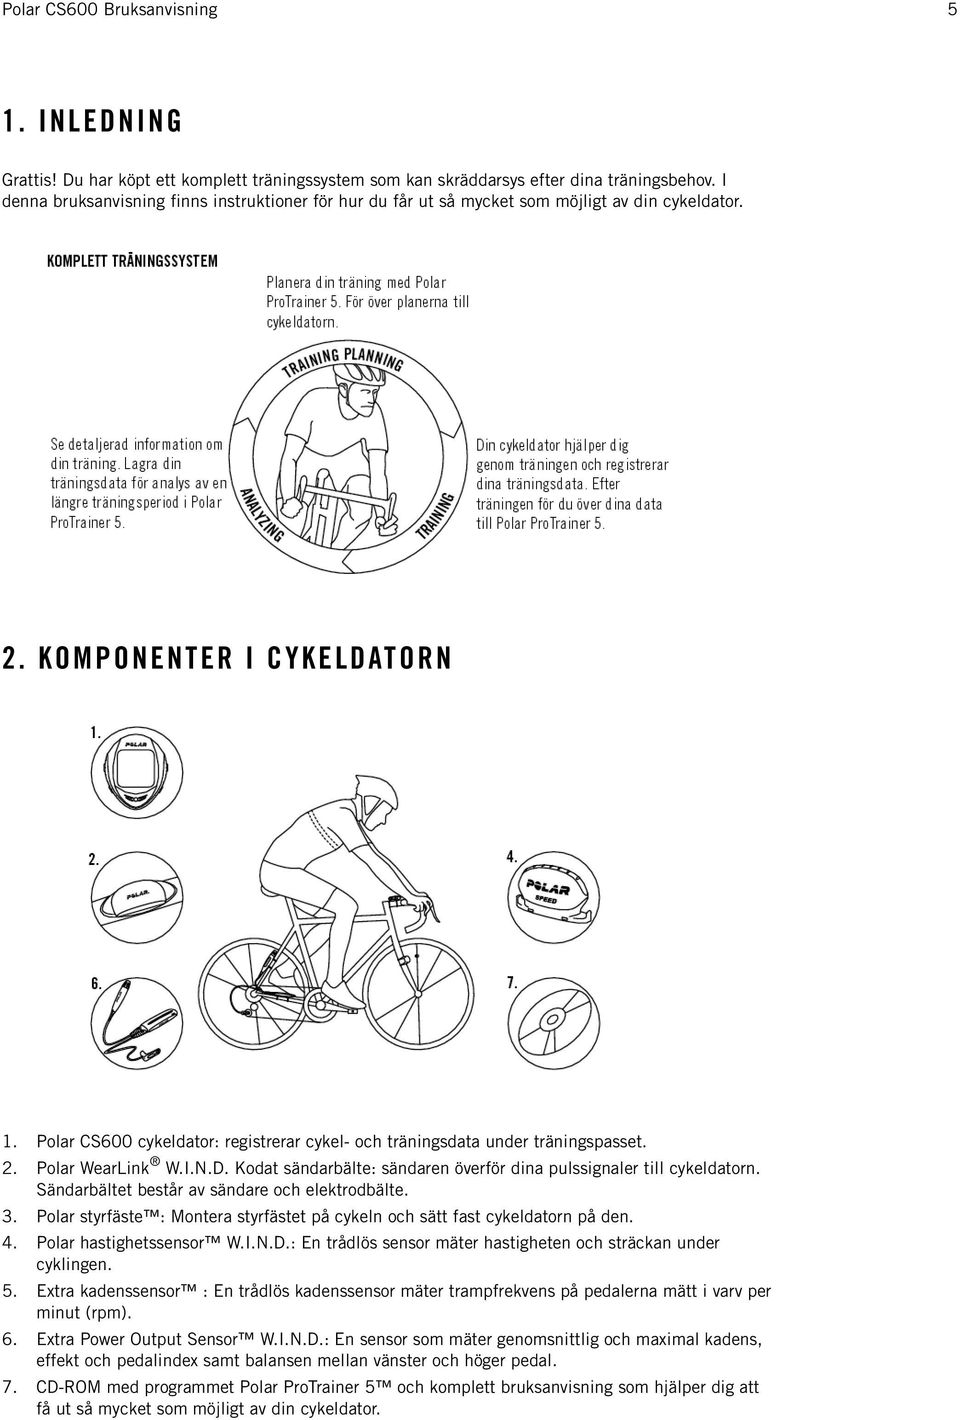 Polar CS600 cykeldator: registrerar cykel- och träningsdata under träningspasset. 2. Polar WearLink W.I.N.D. Kodat sändarbälte: sändaren överför dina pulssignaler till cykeldatorn.